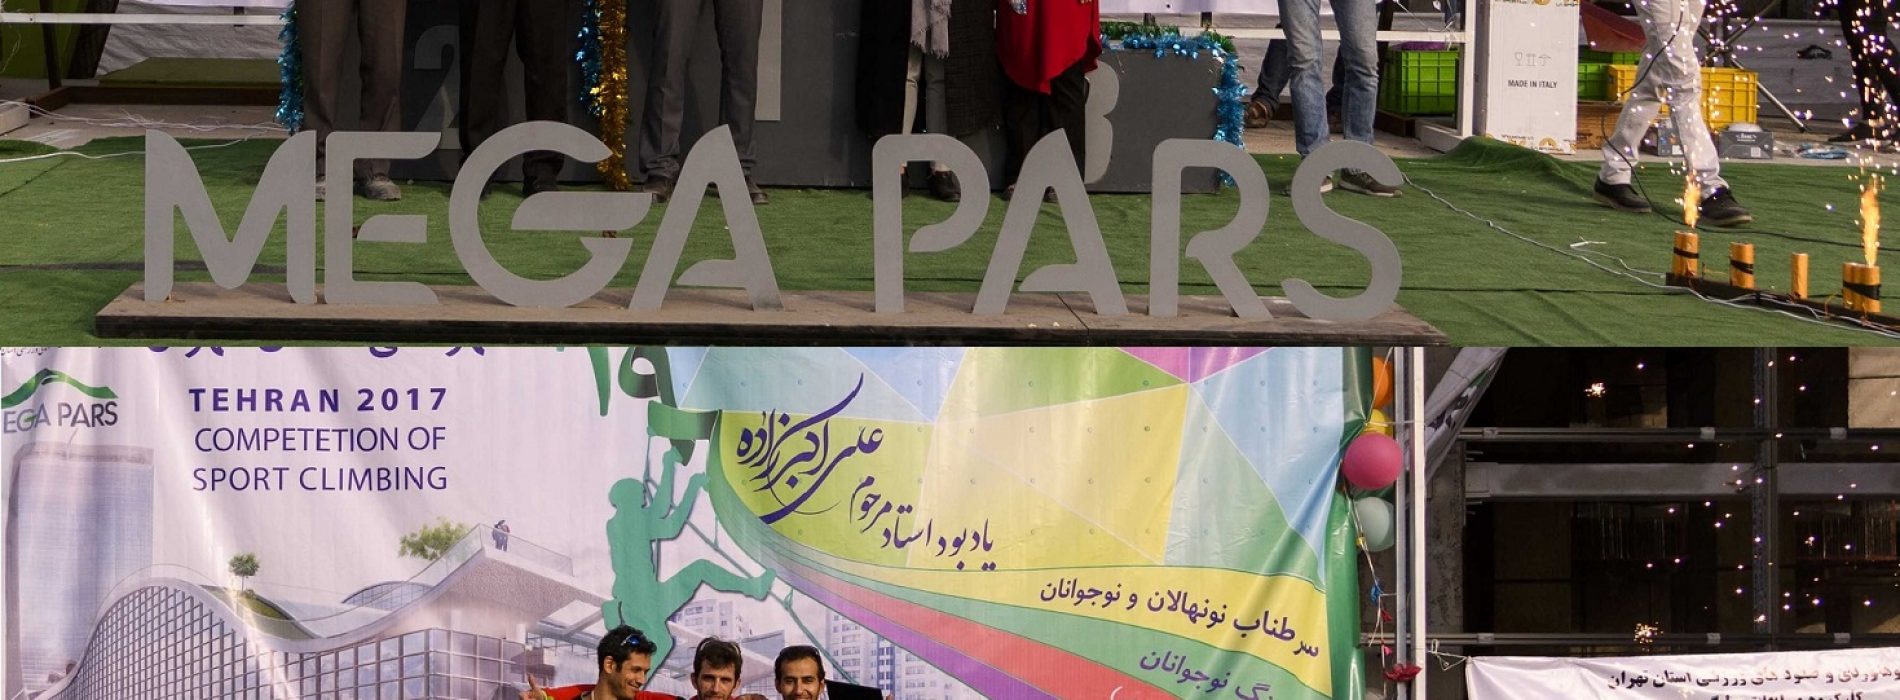 تهران : نتایج مسابقات صعودهای ورزشی در سالن مگاپارس